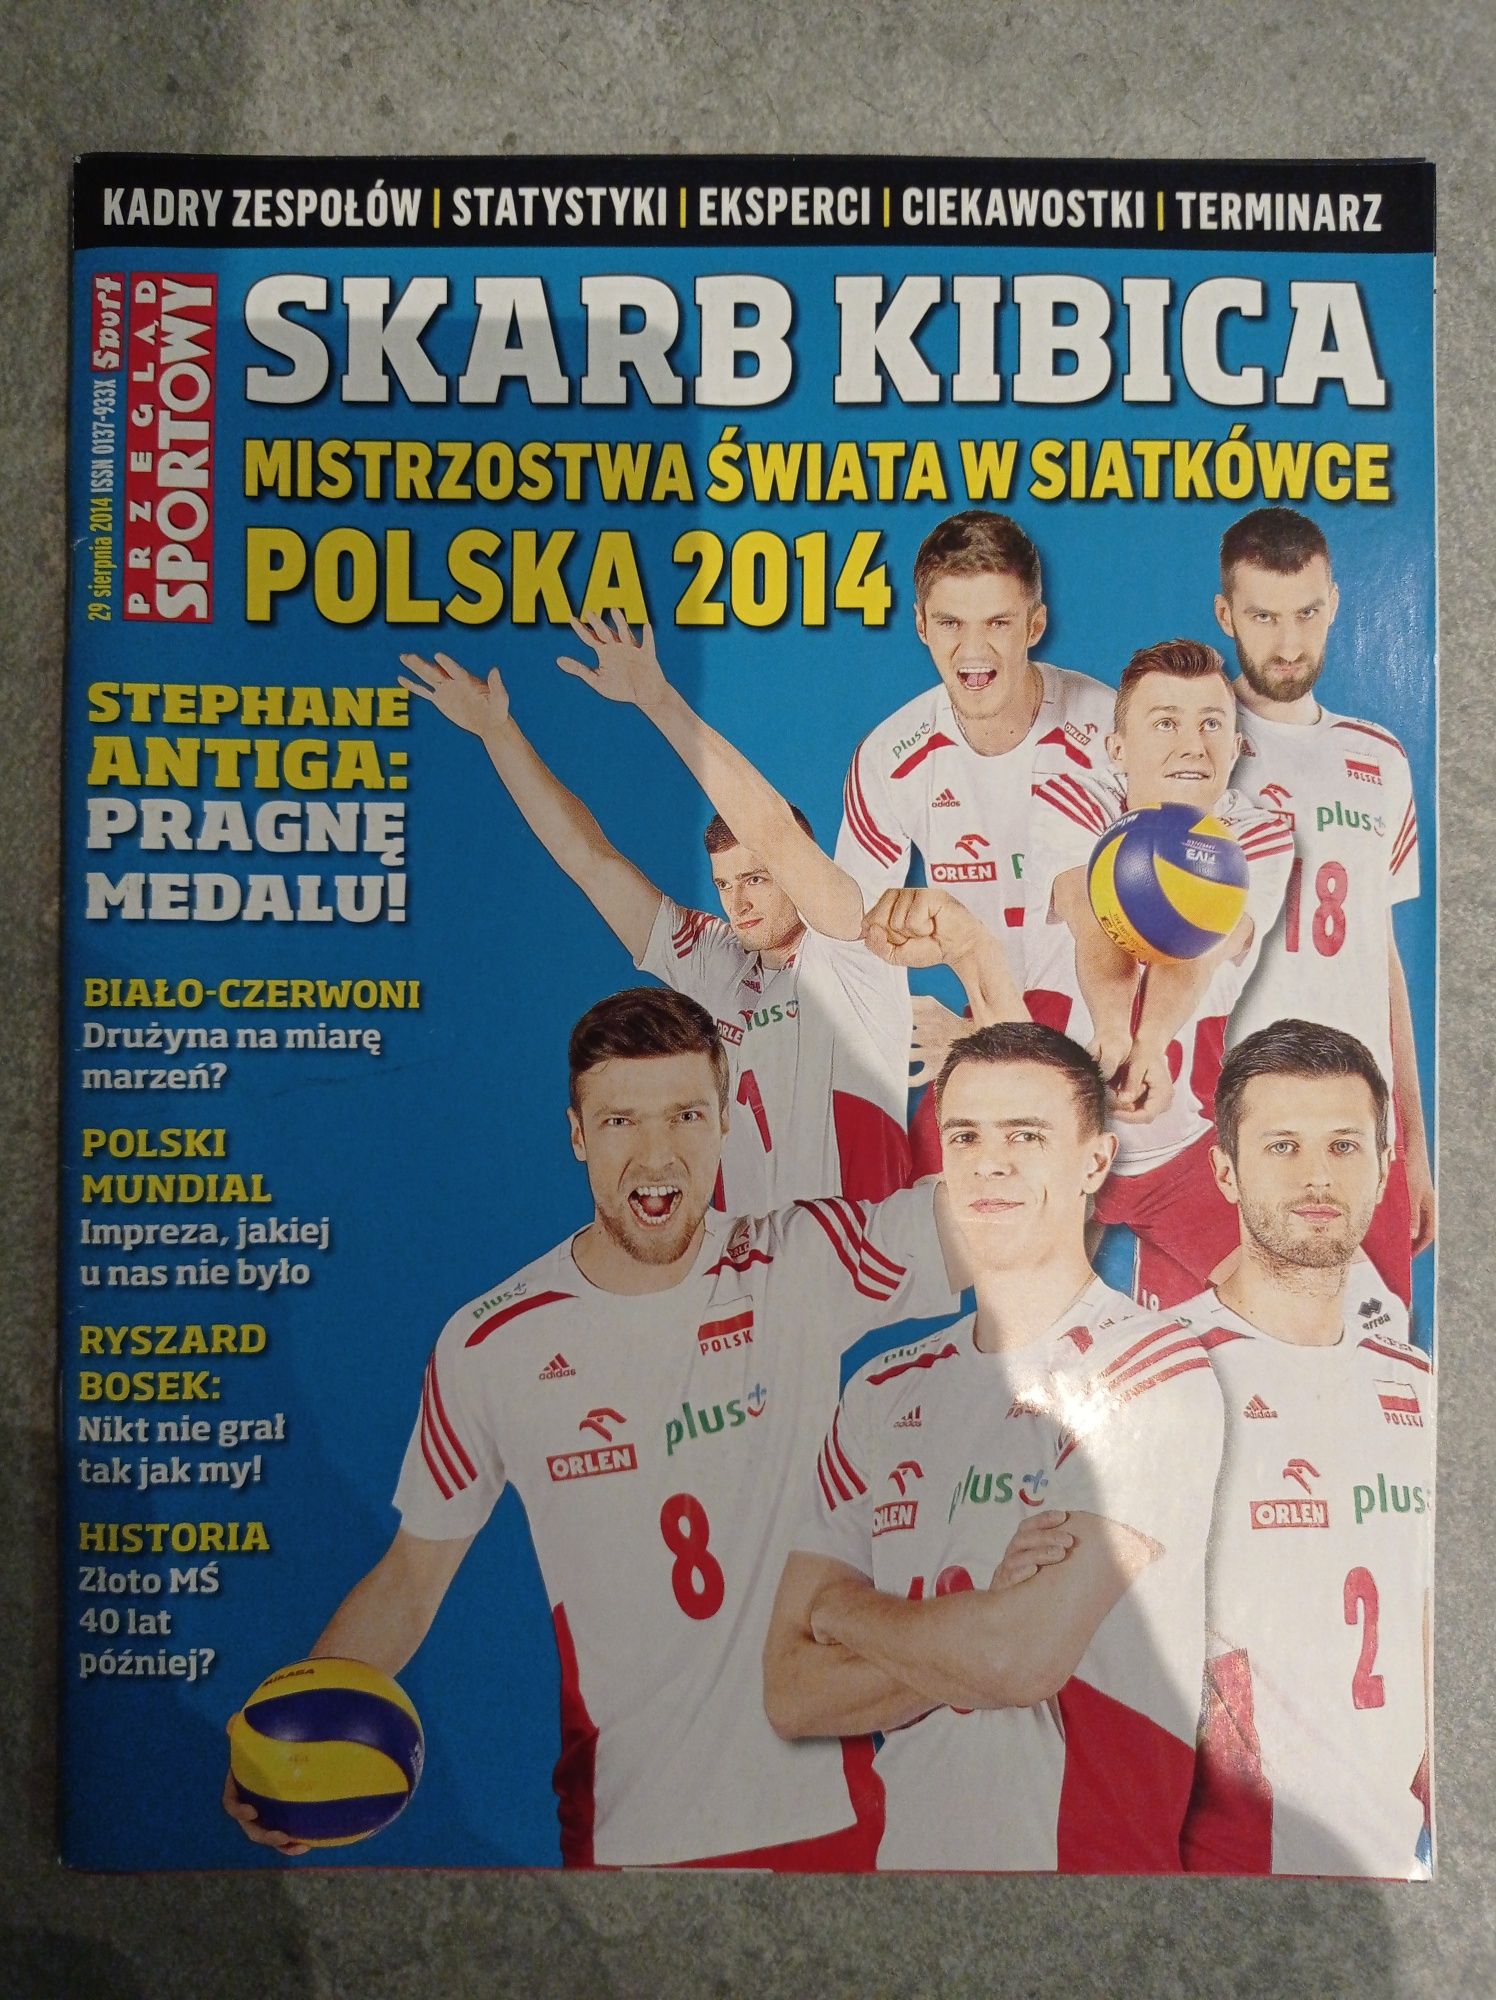 Skarb Kibica Mistrzostwa Świata w siatkówce Polska 2014